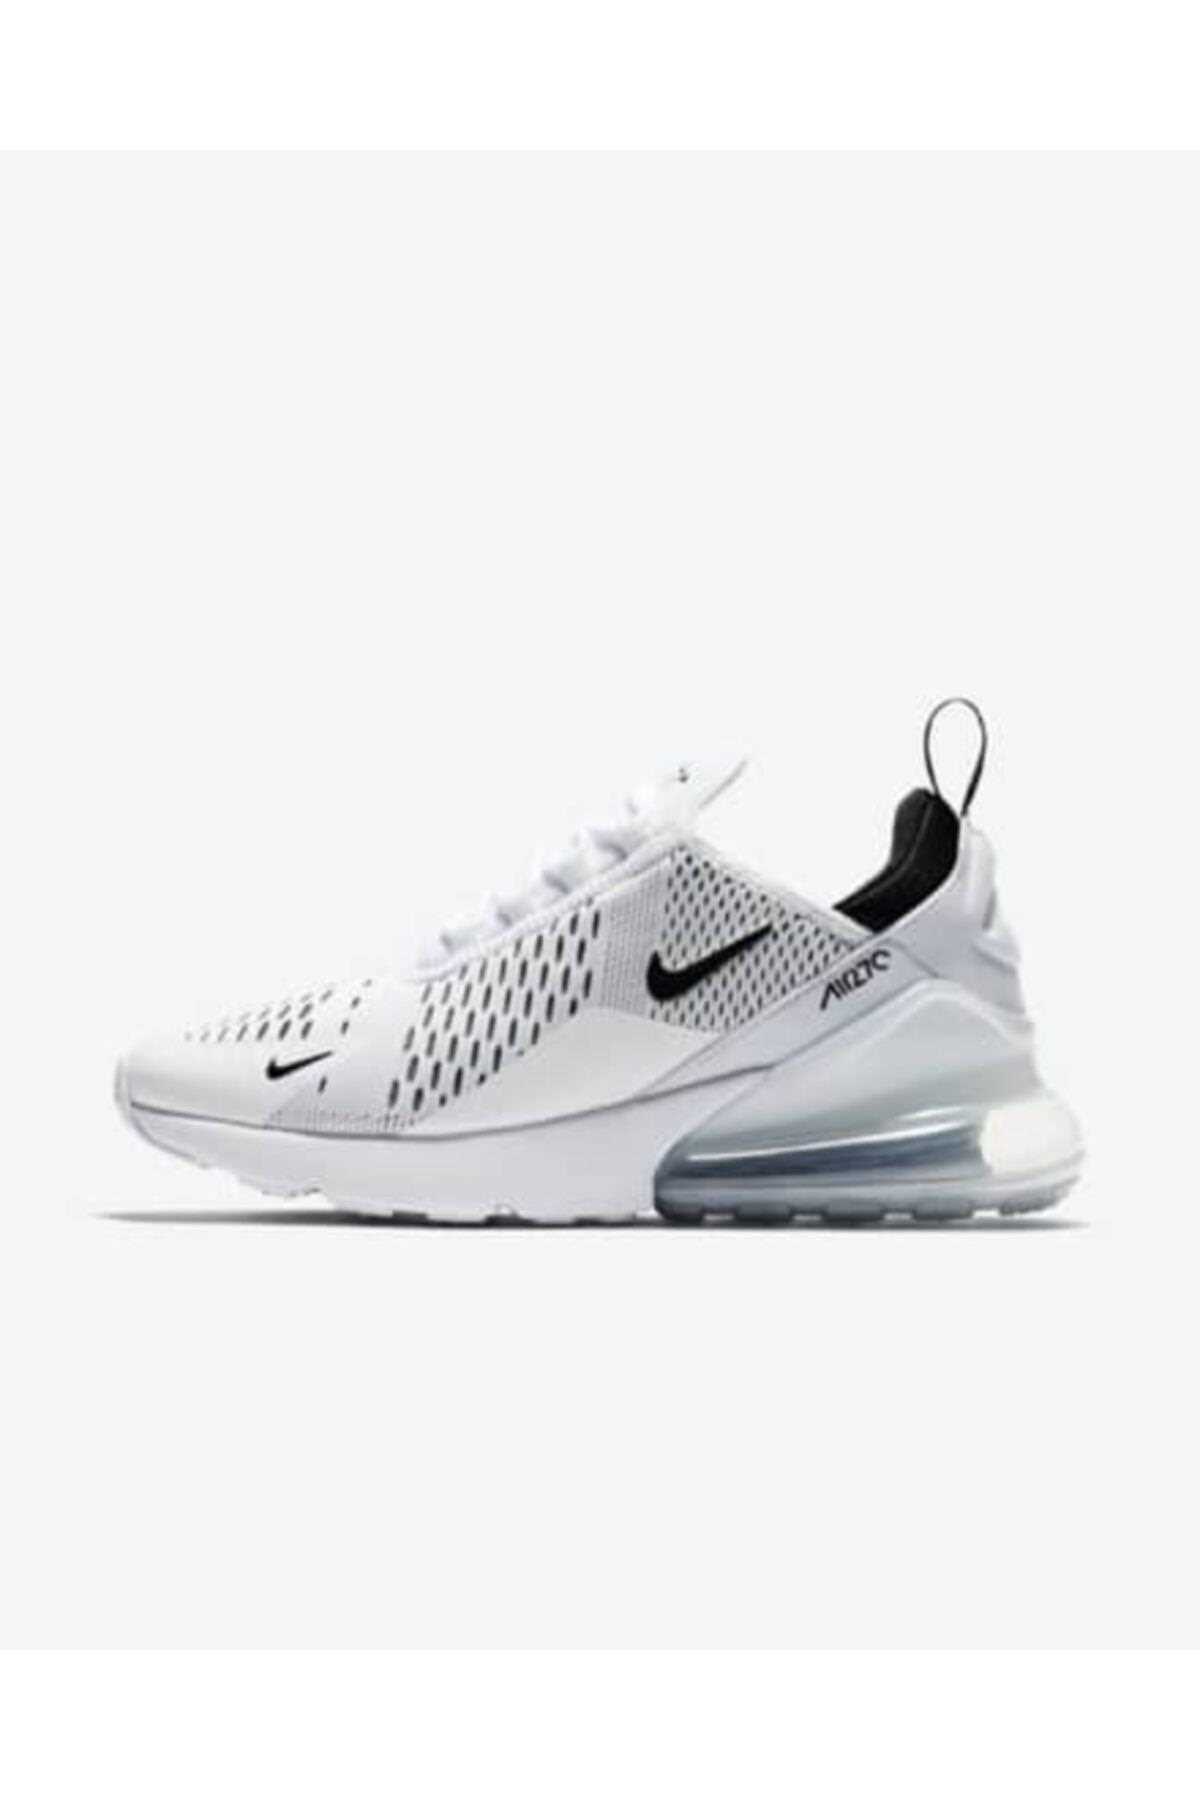 خرید کفش ورزشی برای دویدن ارزان زنانه برند Nike اورجینال رنگ سفید ty147093224